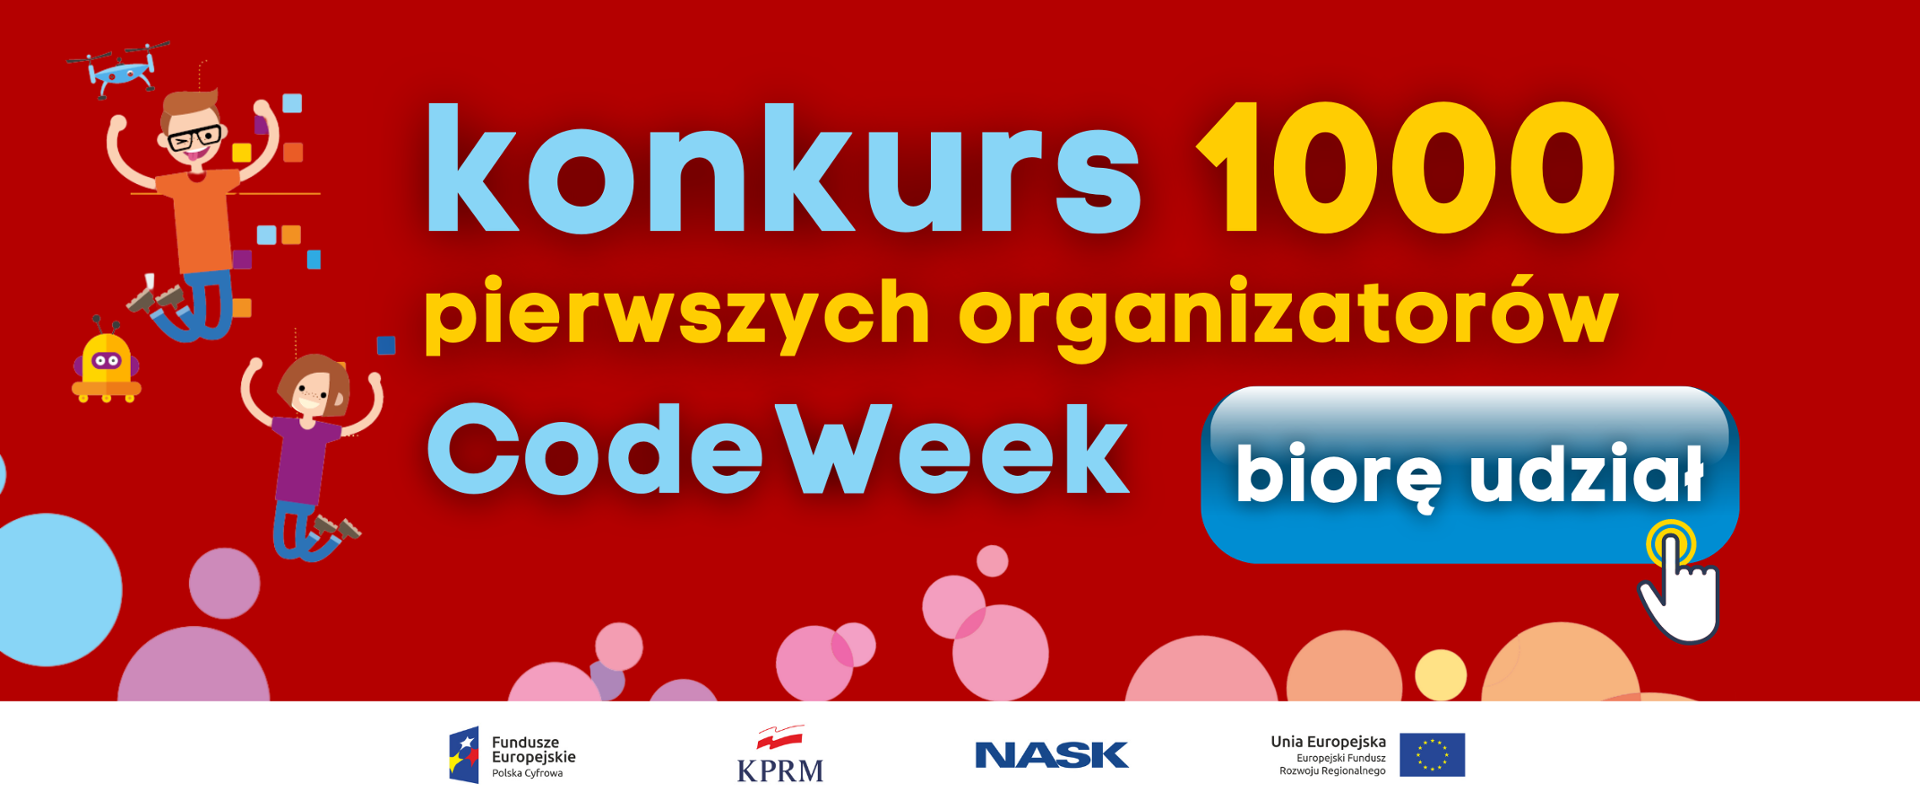 Czerwone tło, napis "Konkurs 1000 pierwszych organizaorów CodeWeek" i "biorę udział" z ikoną klikania. Dzieci i roboty oraz charakterystyczne dla CodeWeek kolorowe bąbelki. Logotypy Funduszy Europejskich, KPRM, NASK i UE.